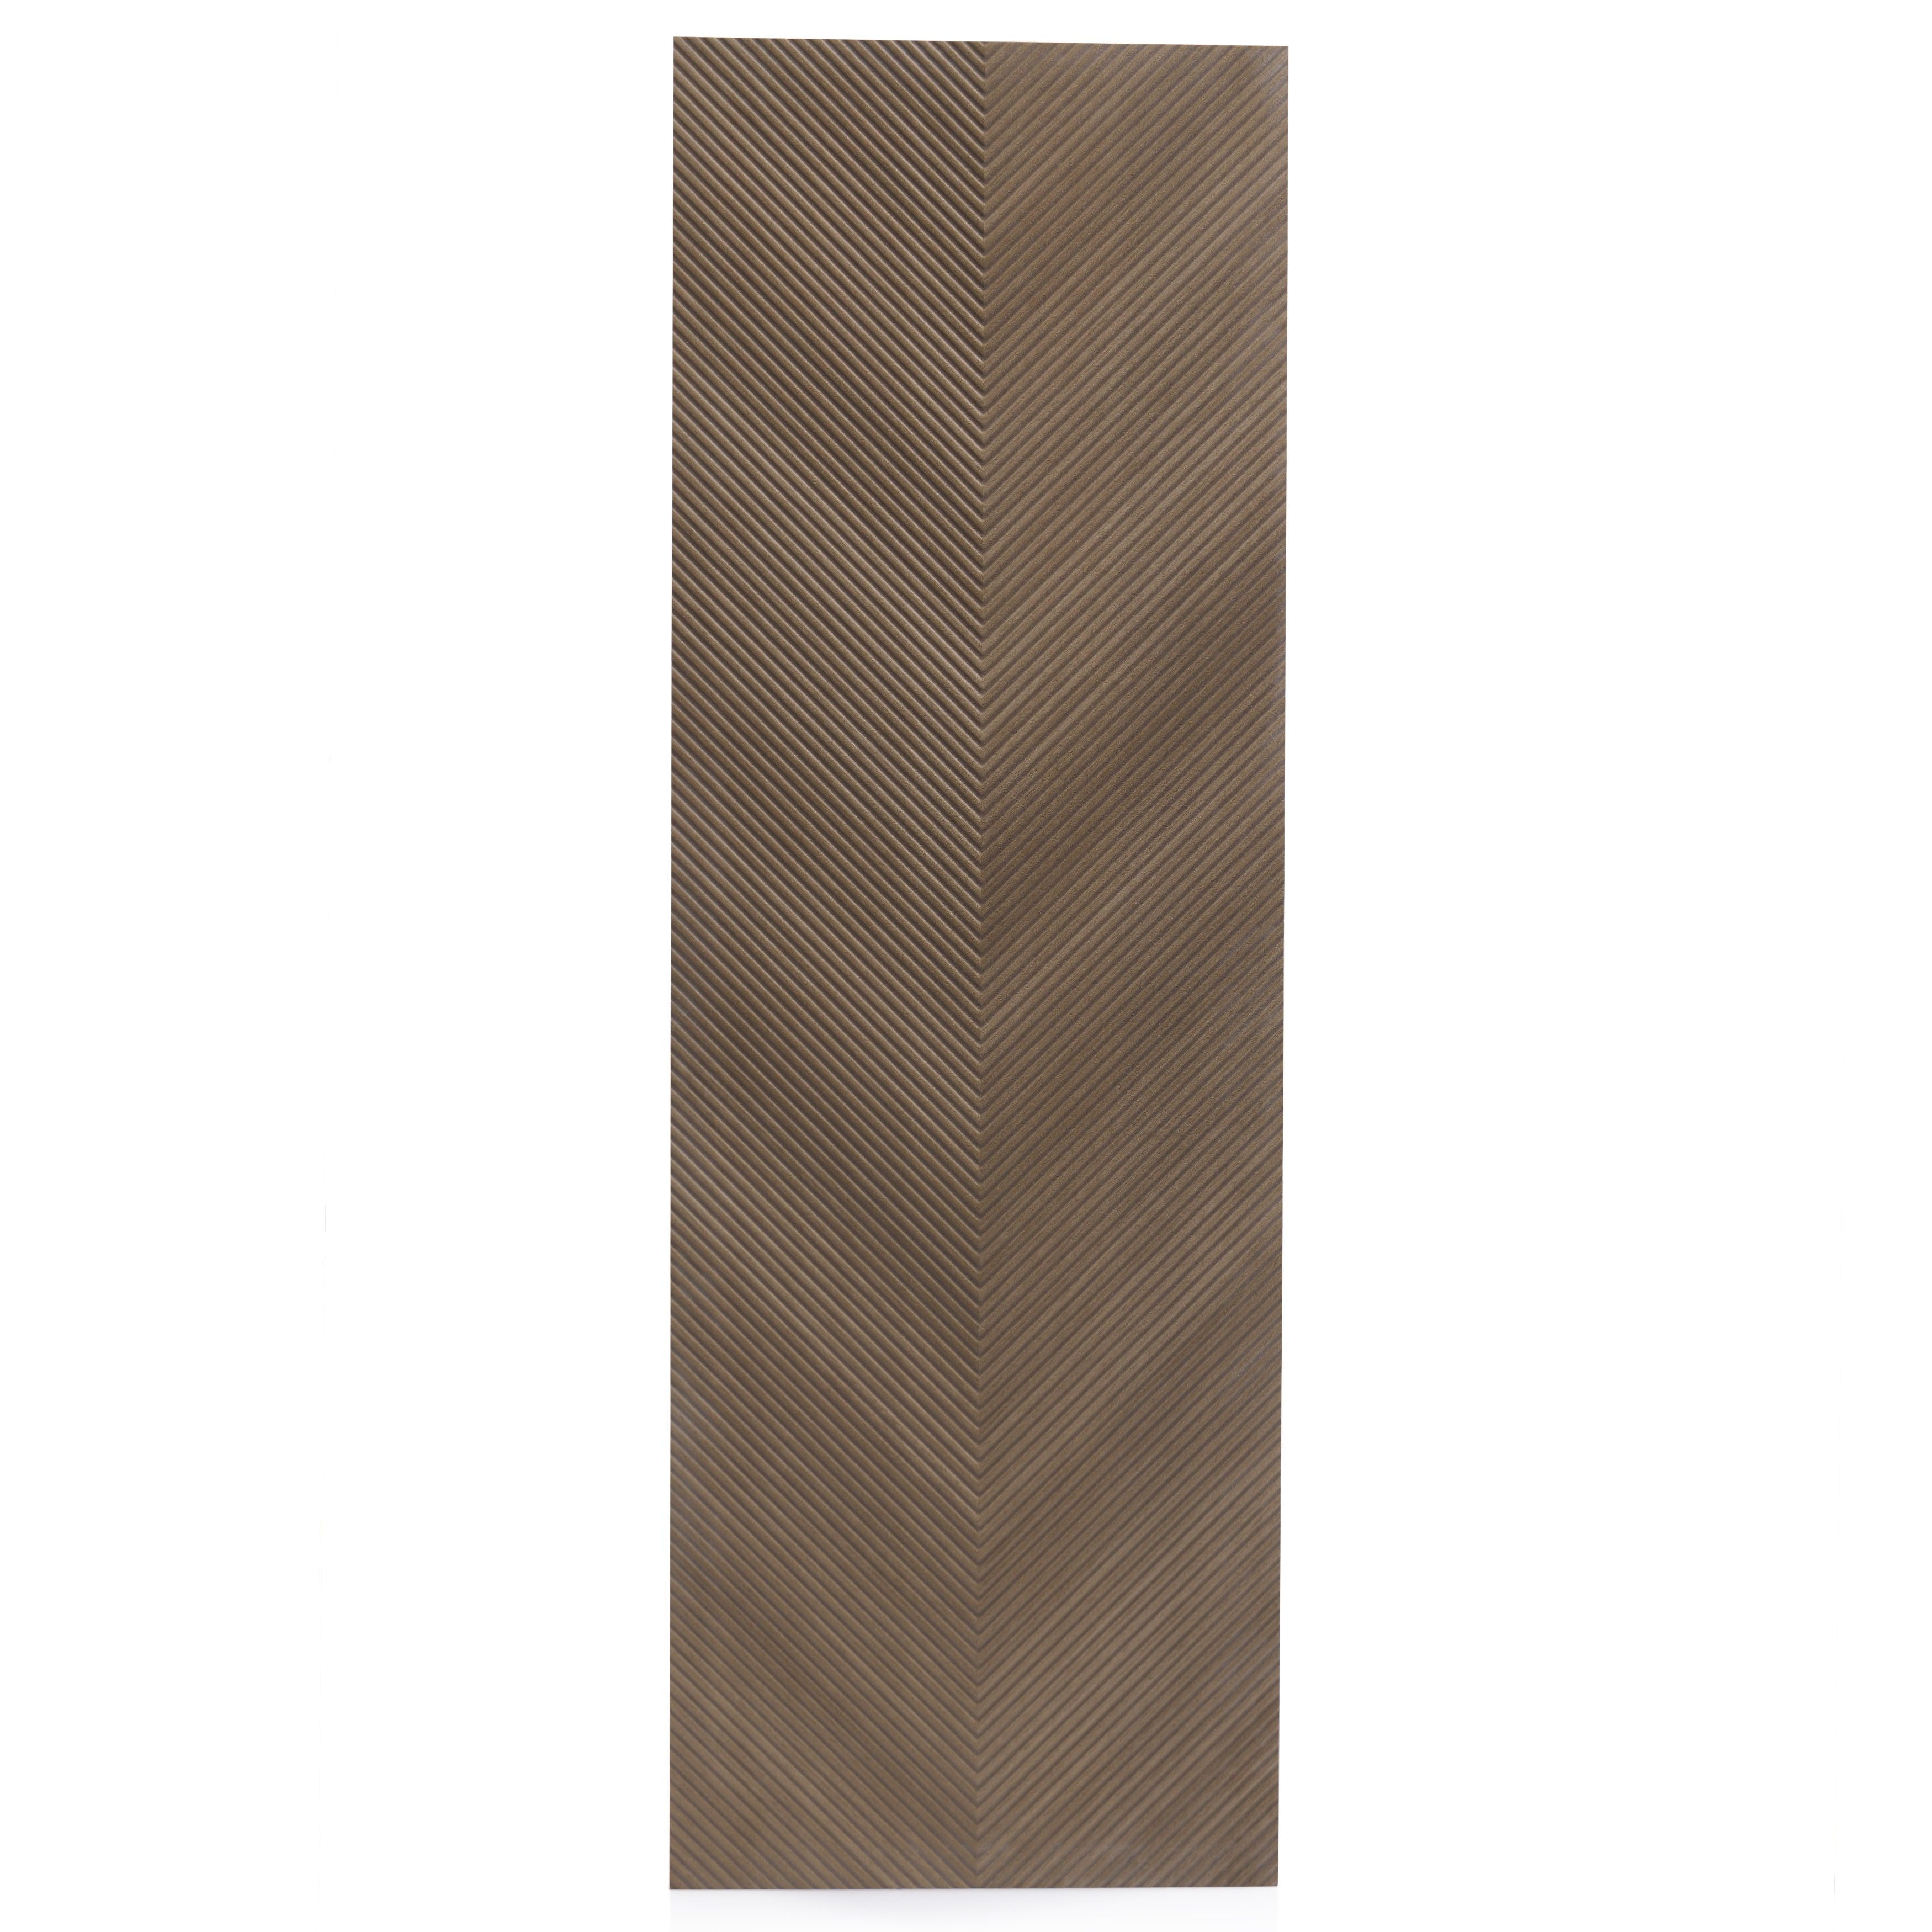 16x48 Wonderful V Shape Designer Wood Look Brown wall tile